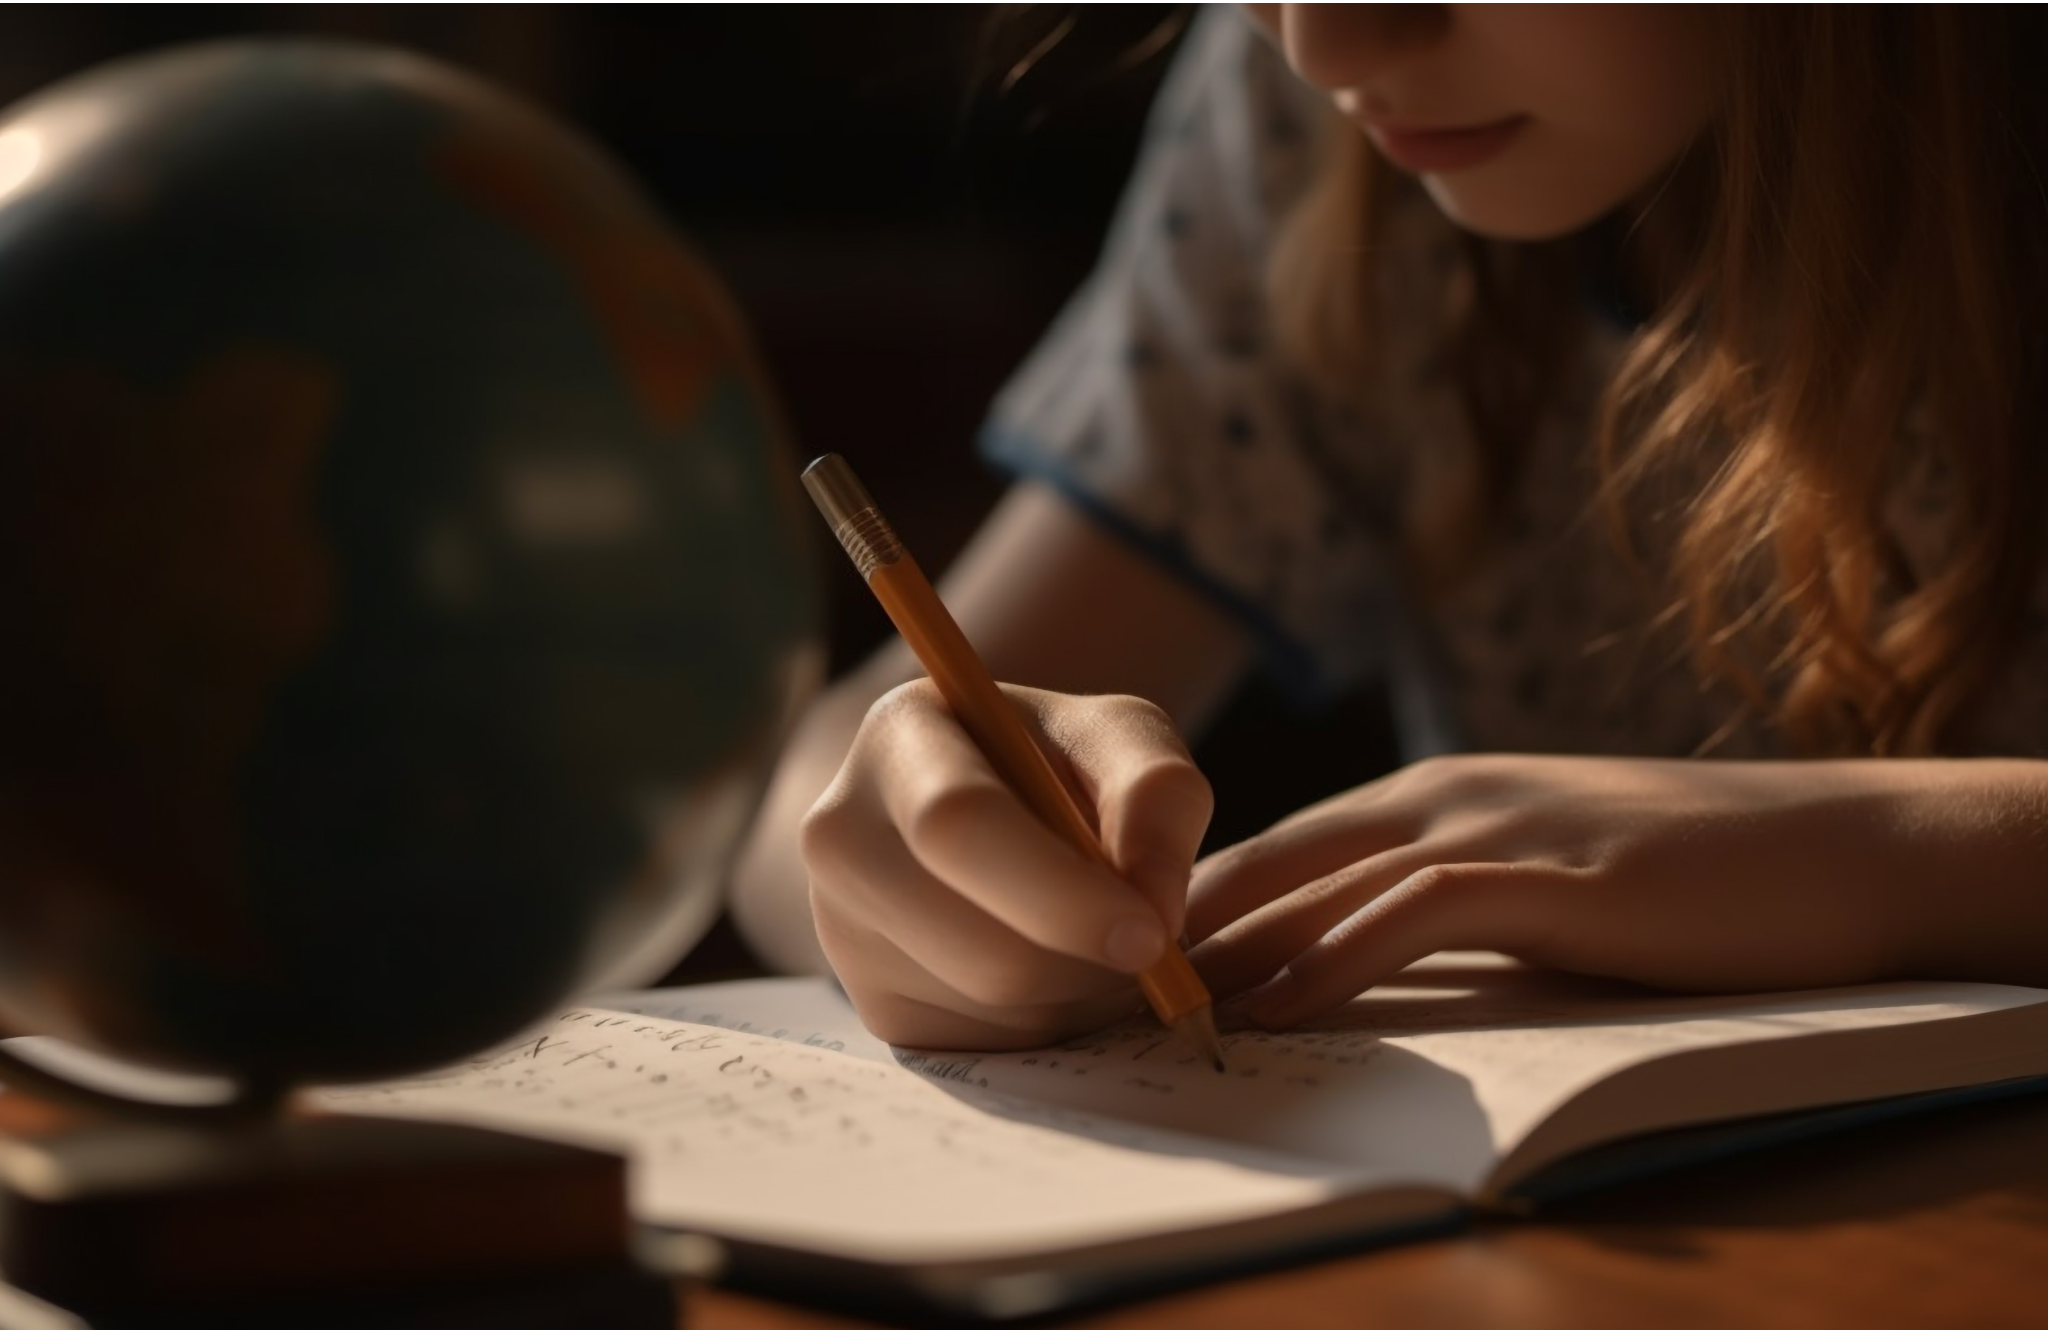 Little girl writing Handwritten Letters for her teacher